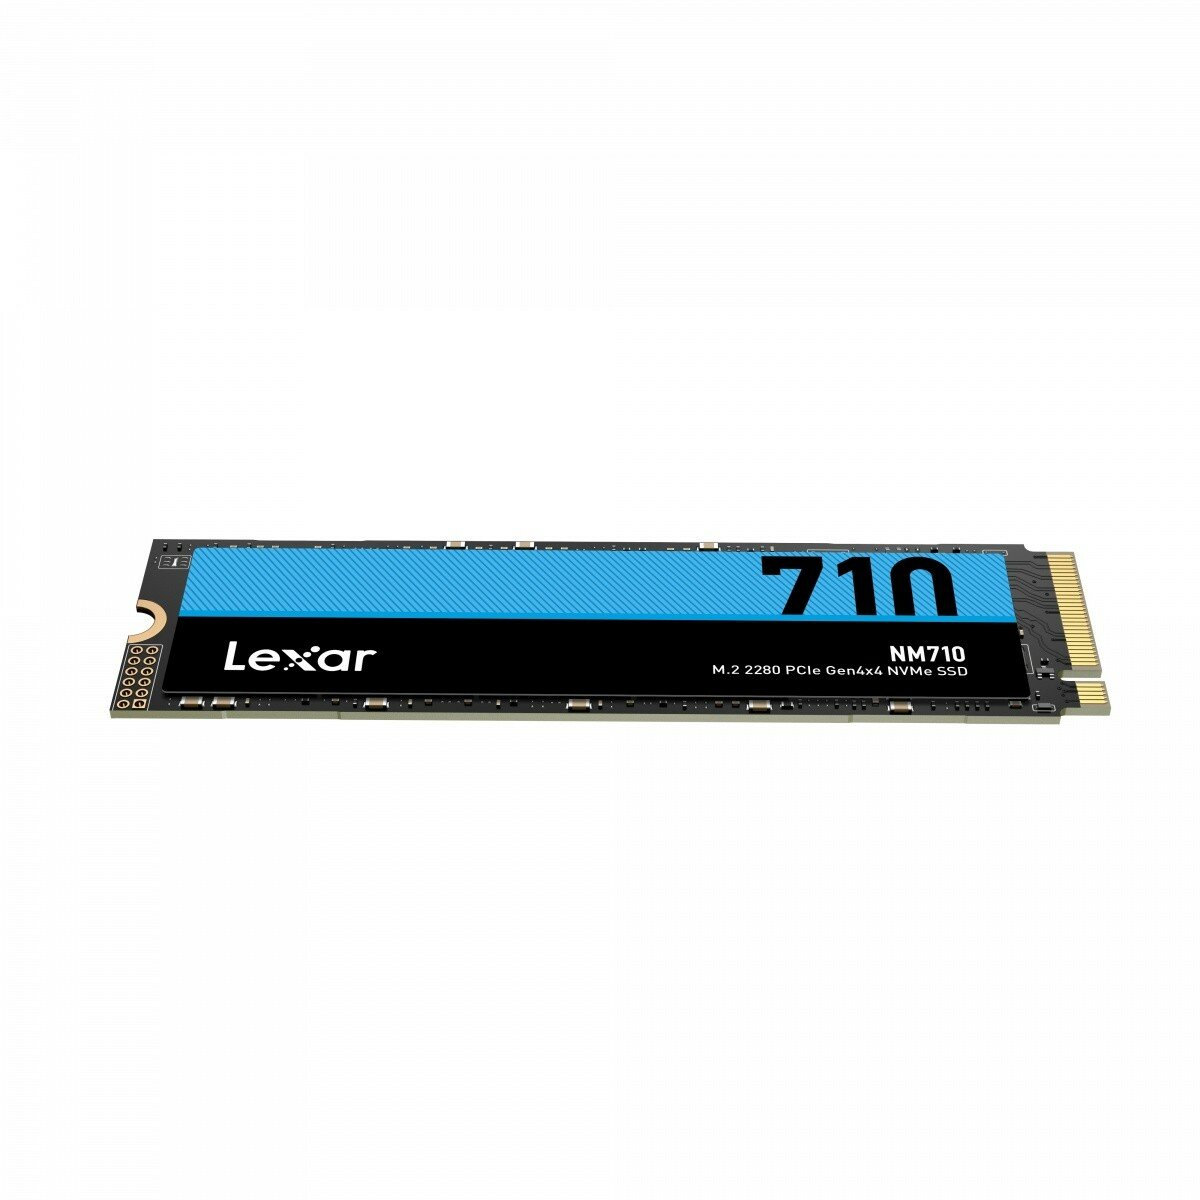 Dysk SSD Lexar NM710 500GB M.2 PCIe NVMe widok od przodu pod skosem w poziomie